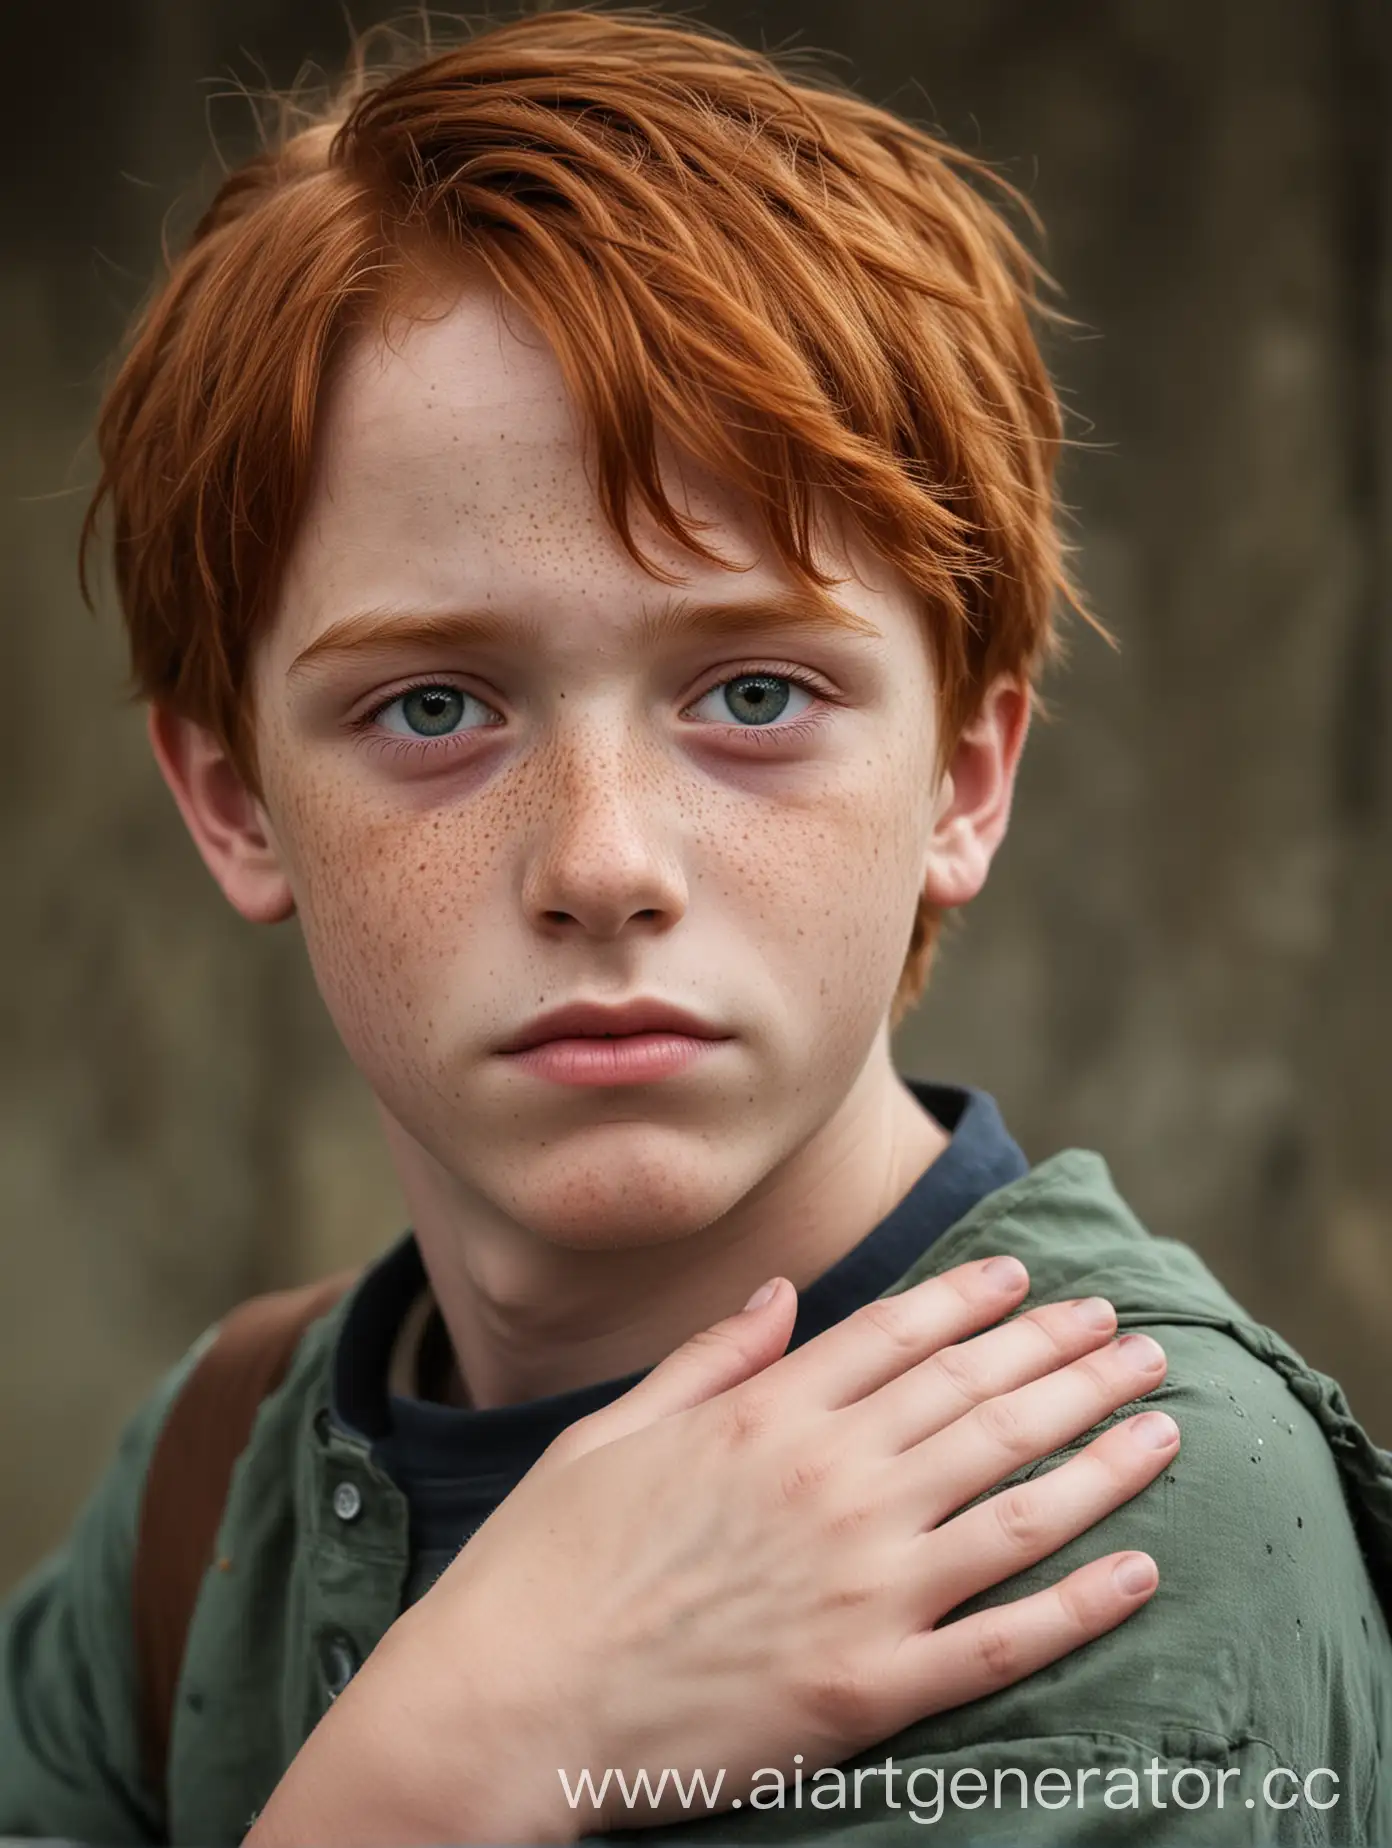 мальчик подросток рыжий, тринадцать лет, с веснушками с грустными глазами, во весь рост.  На его плече чужая рука